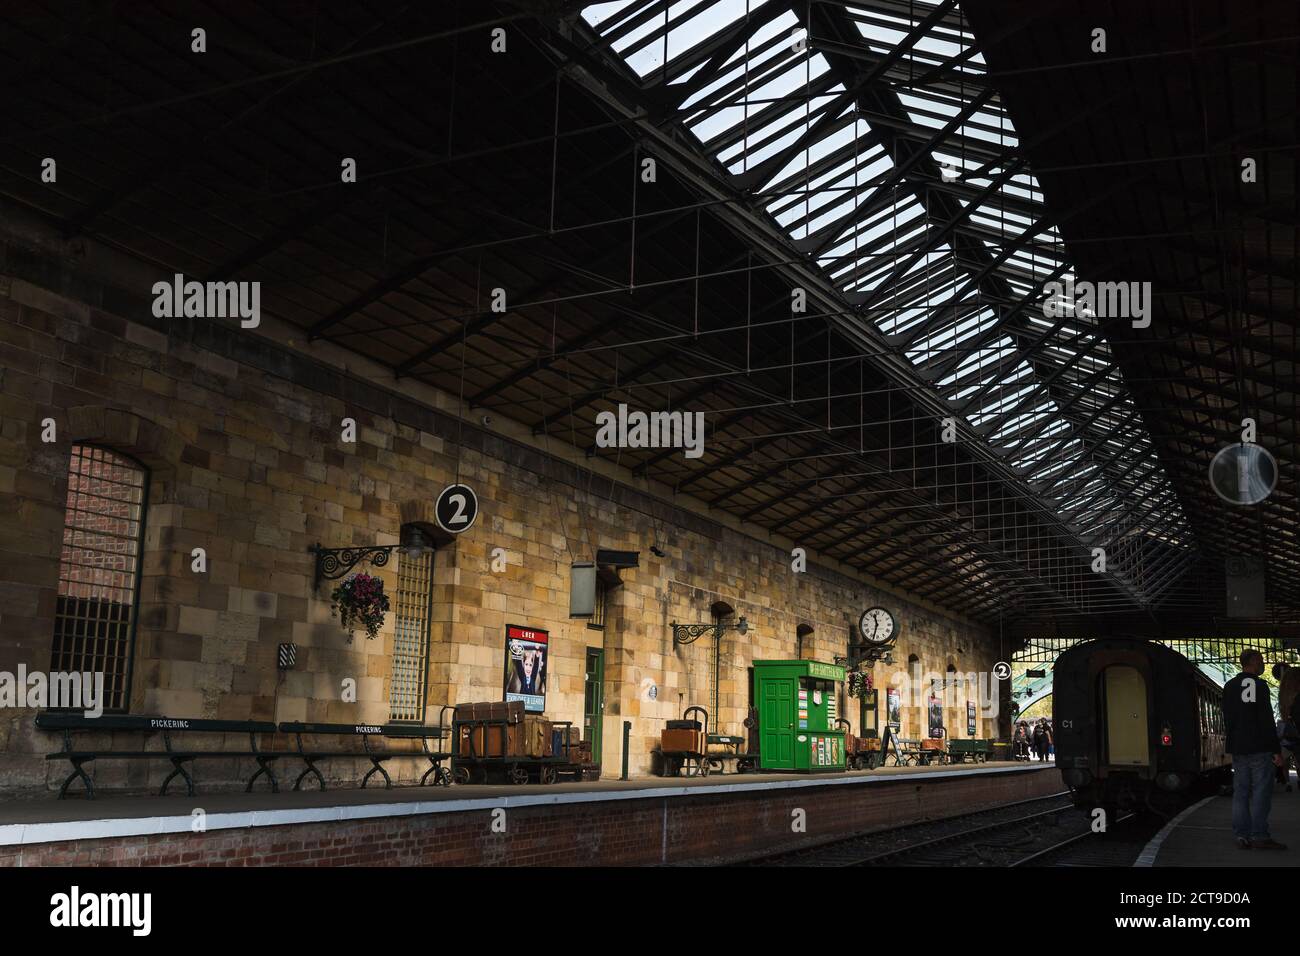 Filtres lumineux à travers le toit de la gare de Pickering photographié en septembre 2020 sur le chemin de fer du North Yorkshire. Banque D'Images